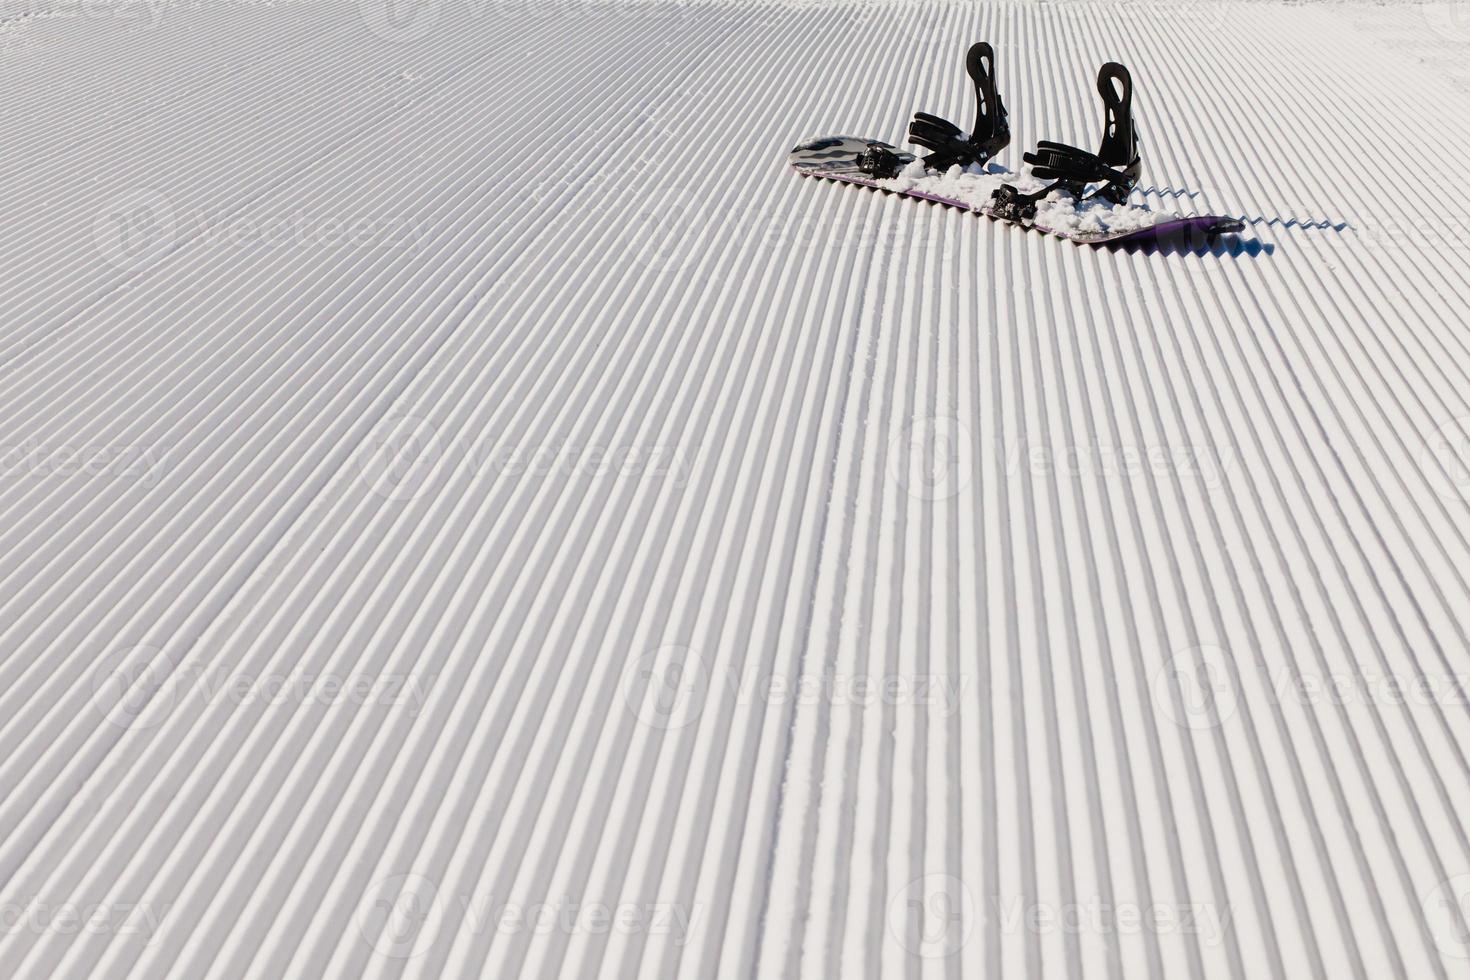 équipement pour faire du snowboard sur une nouvelle neige damée photo